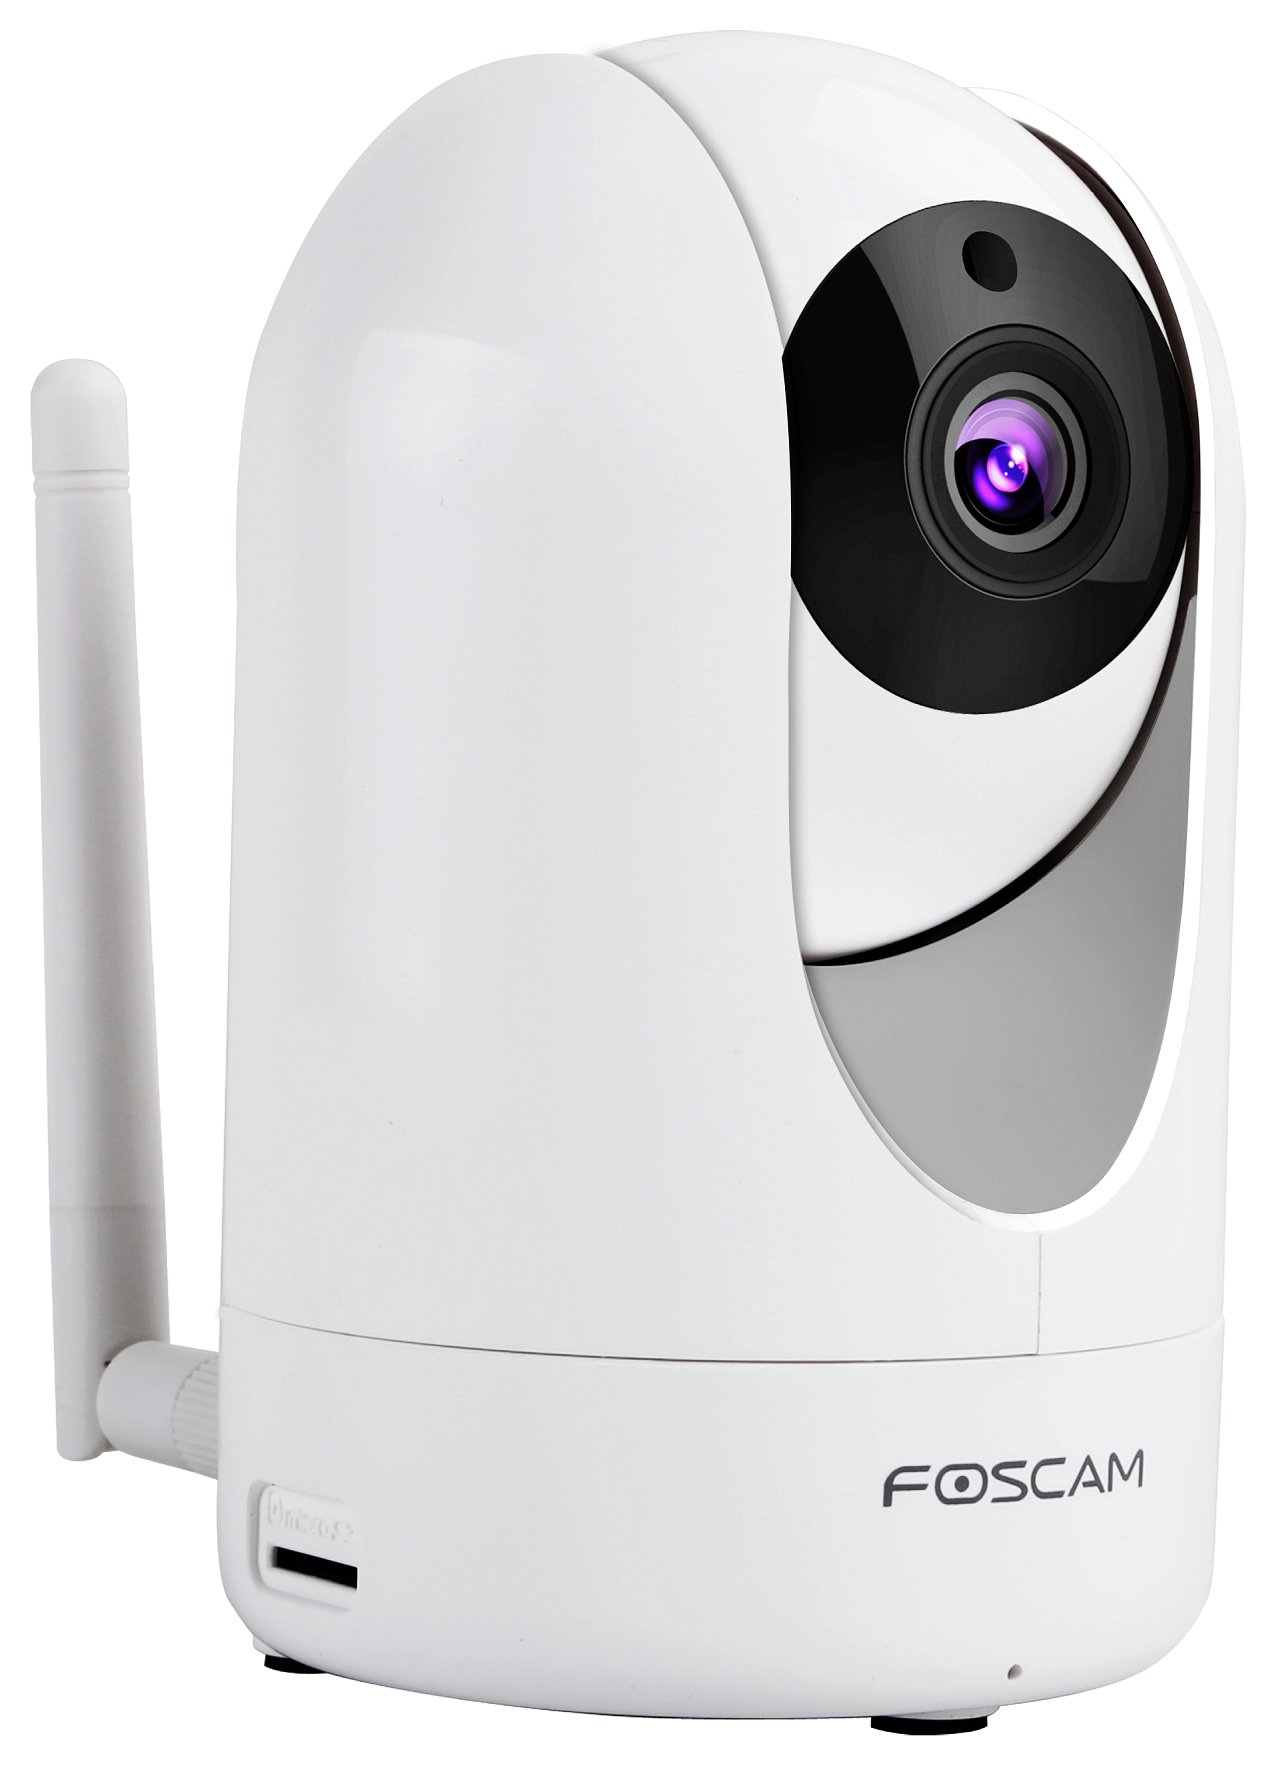 Foscam R2 1080P HD Indoor Wireless CCTV IP Camera - White